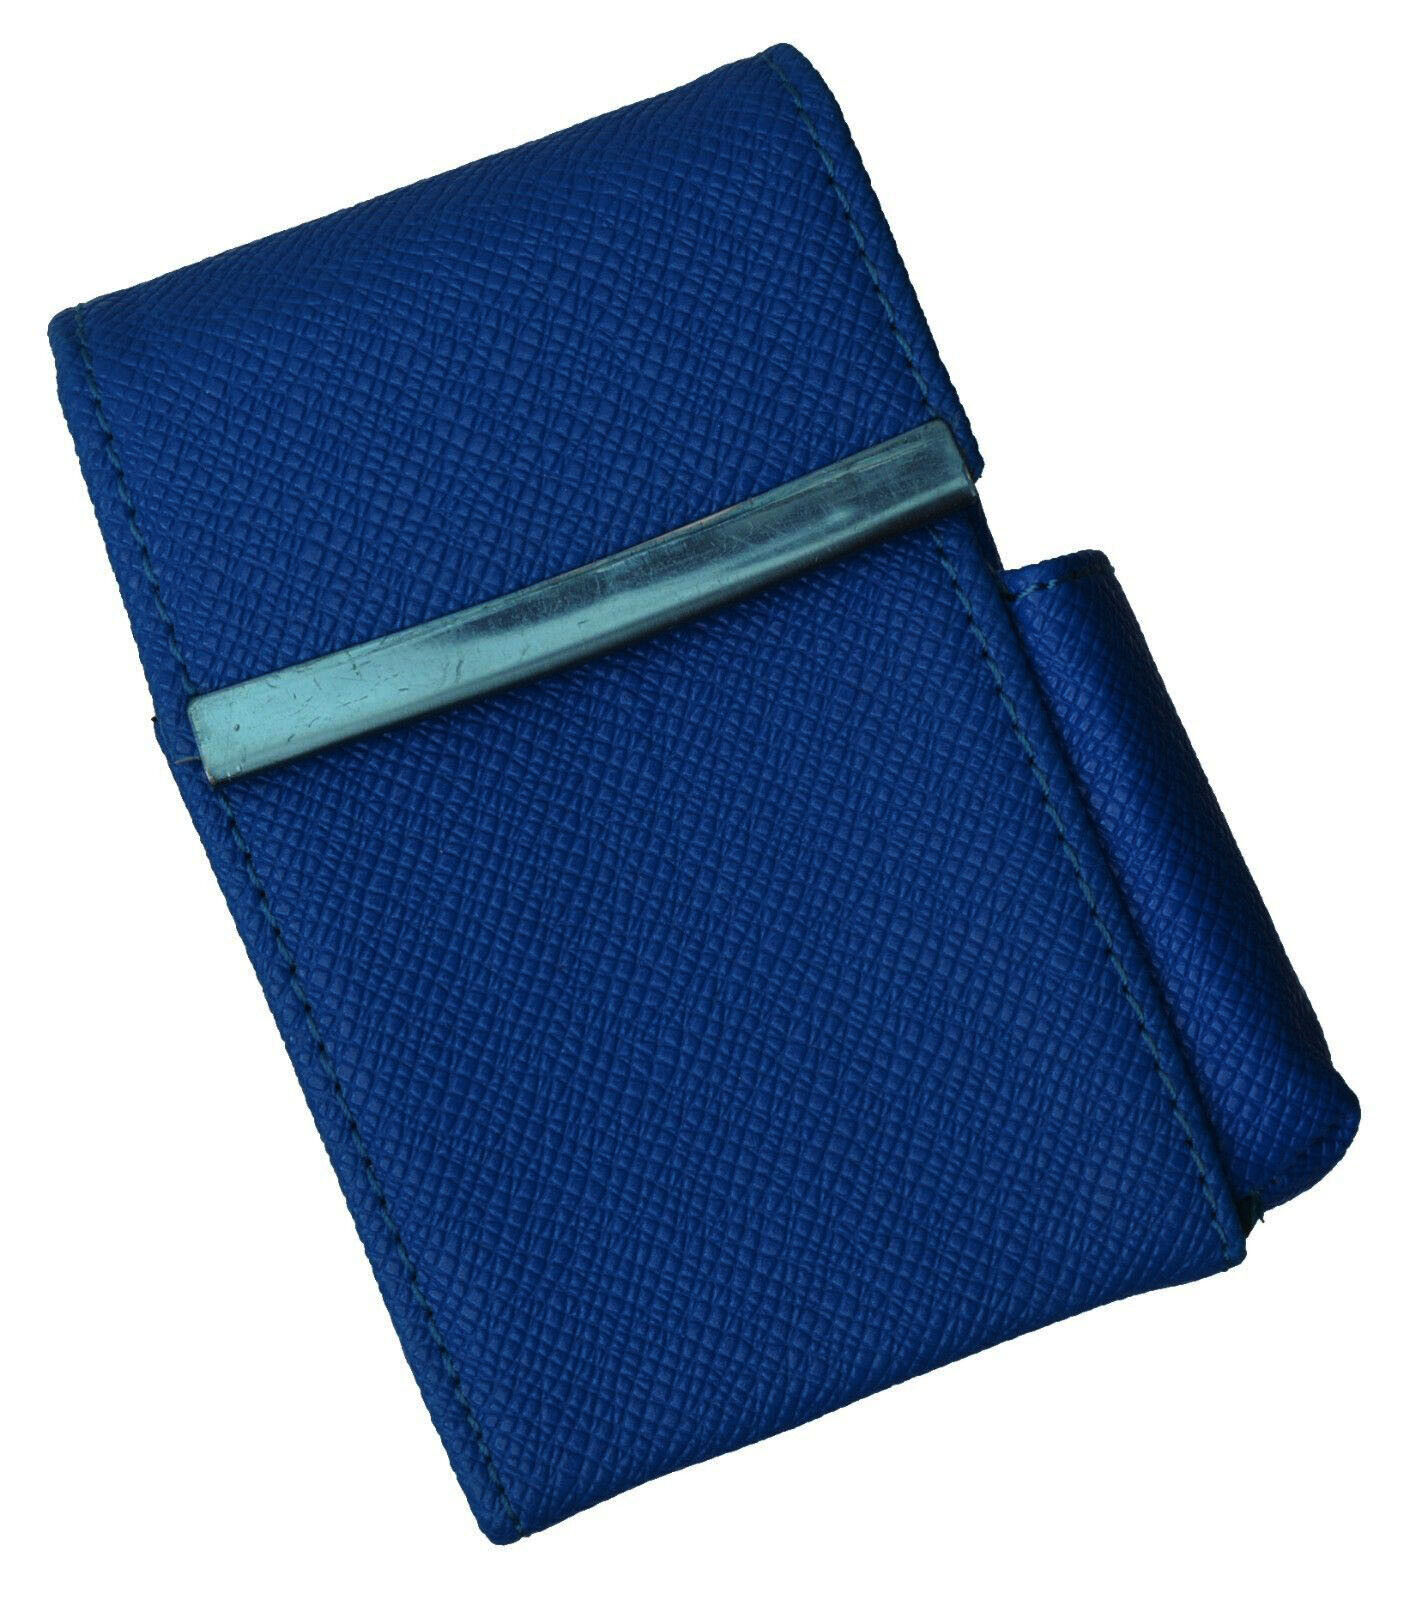  Blue Cigarette Leather Hard Case Lighter Pouch Clip Top Regular 100\'s Holder